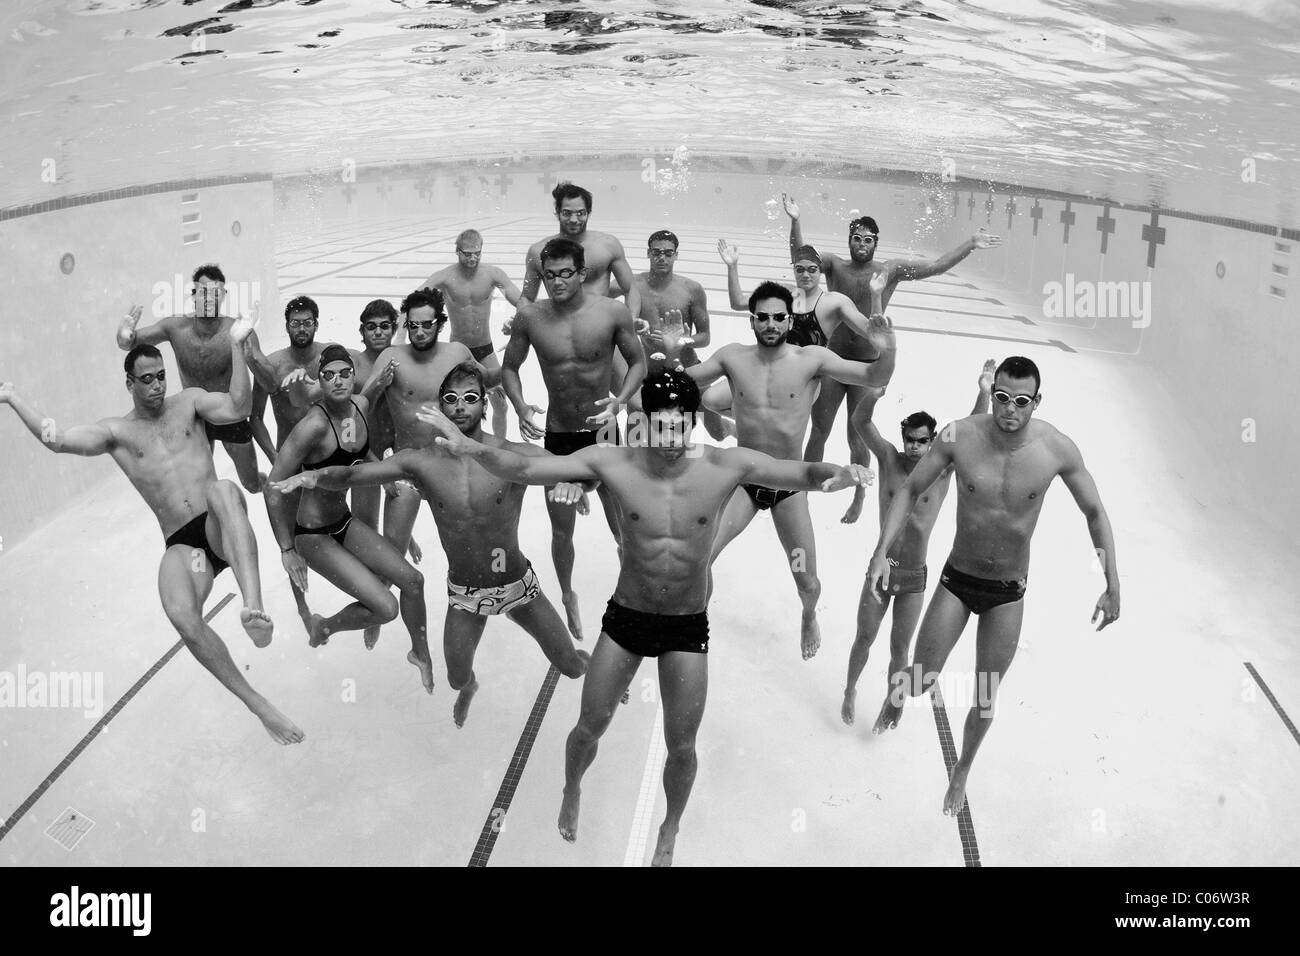 Spielerische Moment für Mitglieder von The Race Club-Schwimm-Team. Stockfoto